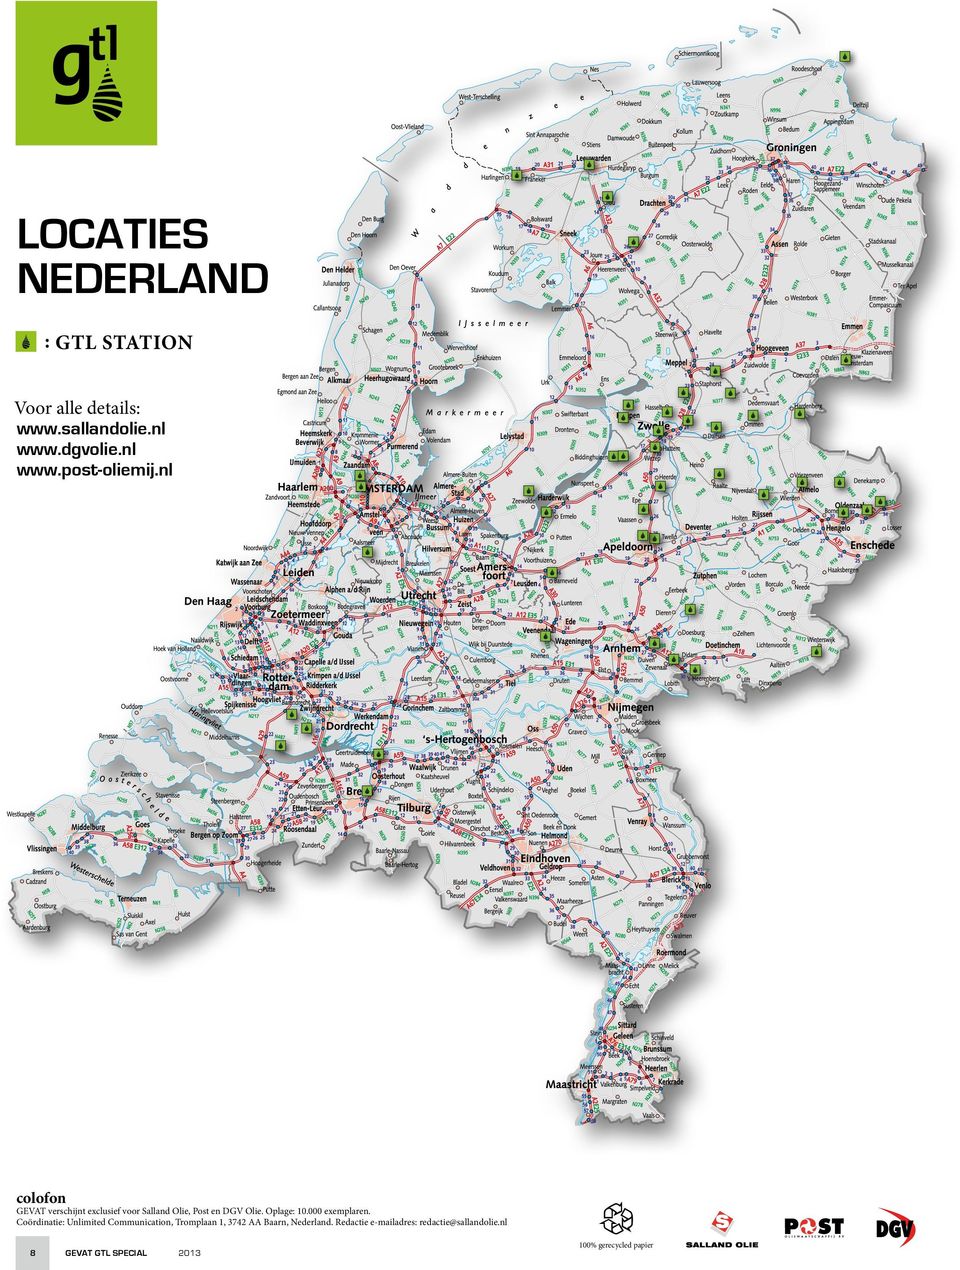 000 exemplaren. Coördinatie: Unlimited Communication, Tromplaan 1, 3742 AA Baarn, Nederland.